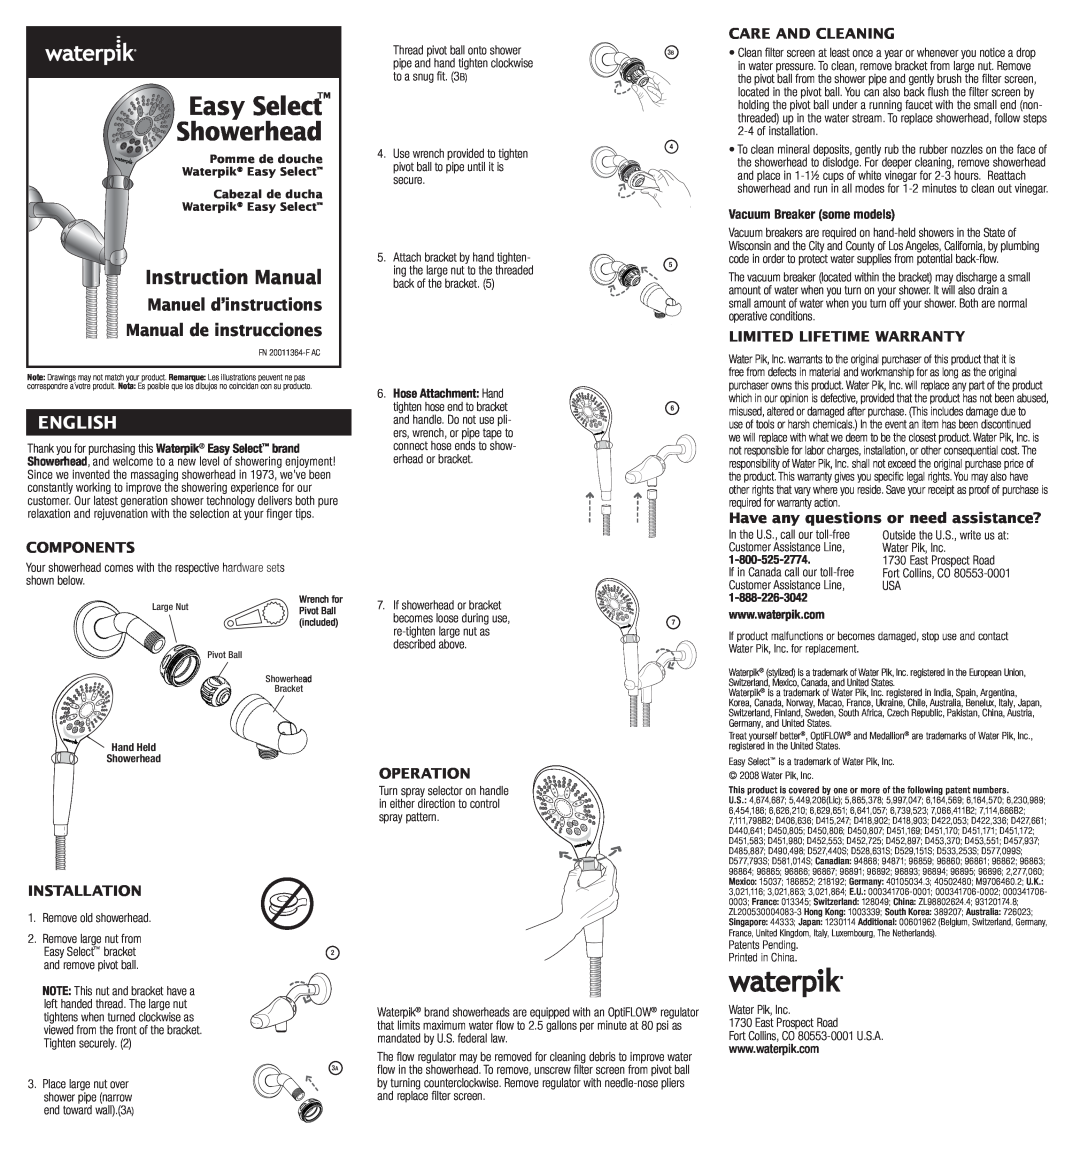 Waterpik Technologies FN 20011364-F AC warranty Easy Select, Showerhead, Instruction Manual, Manuel d’instructions 